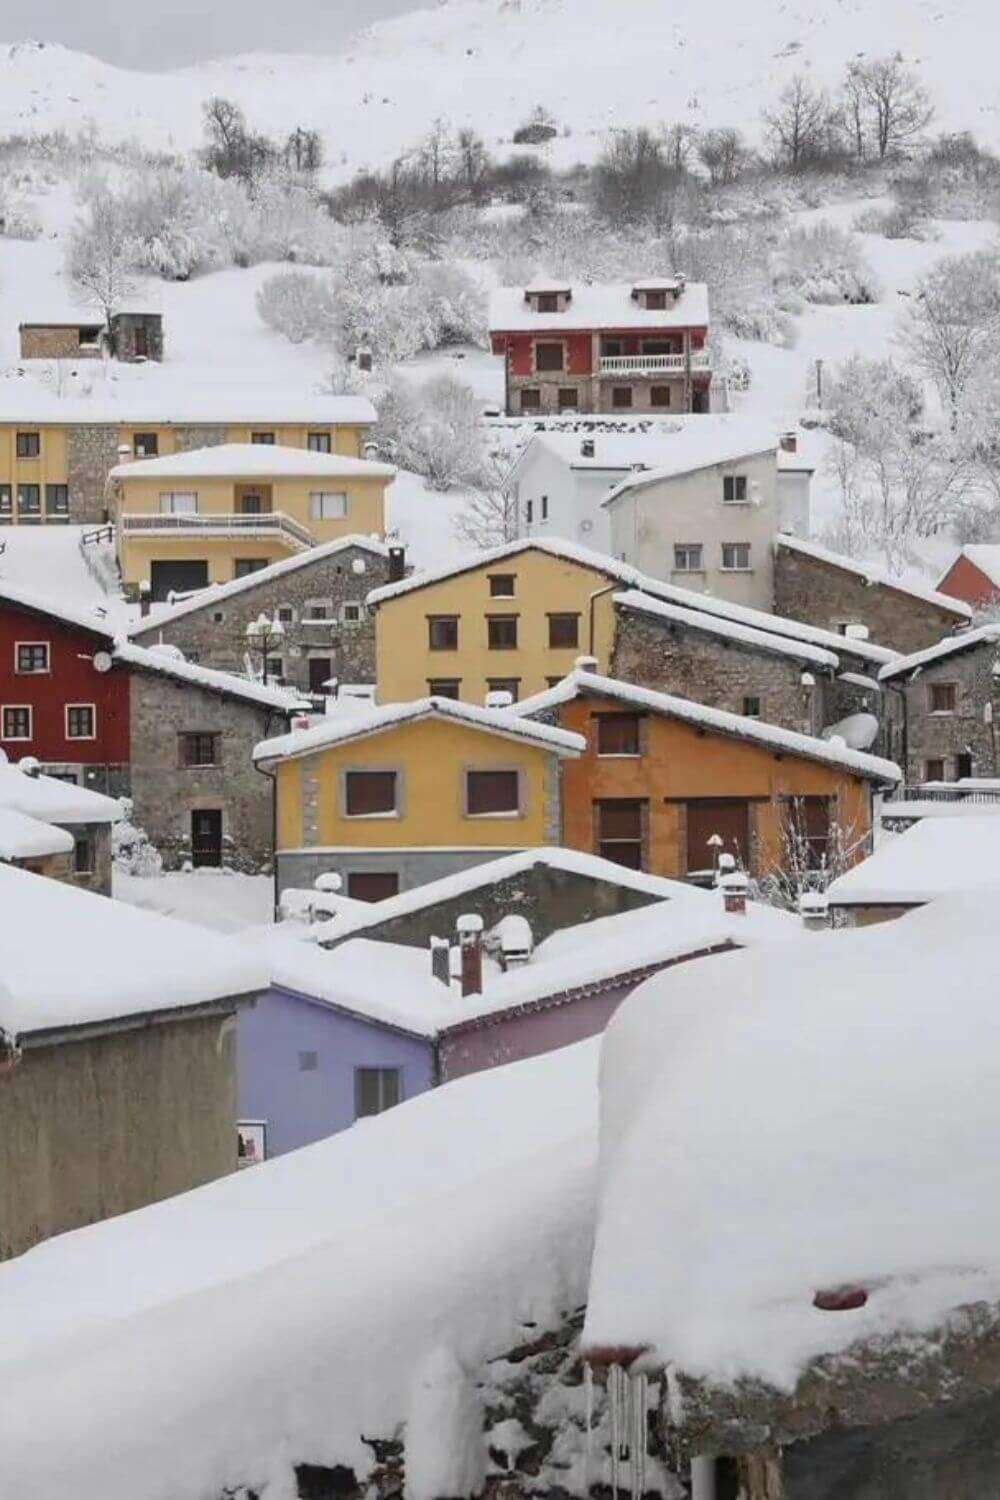 pueblos nevados bonitos España Sotres Asturias